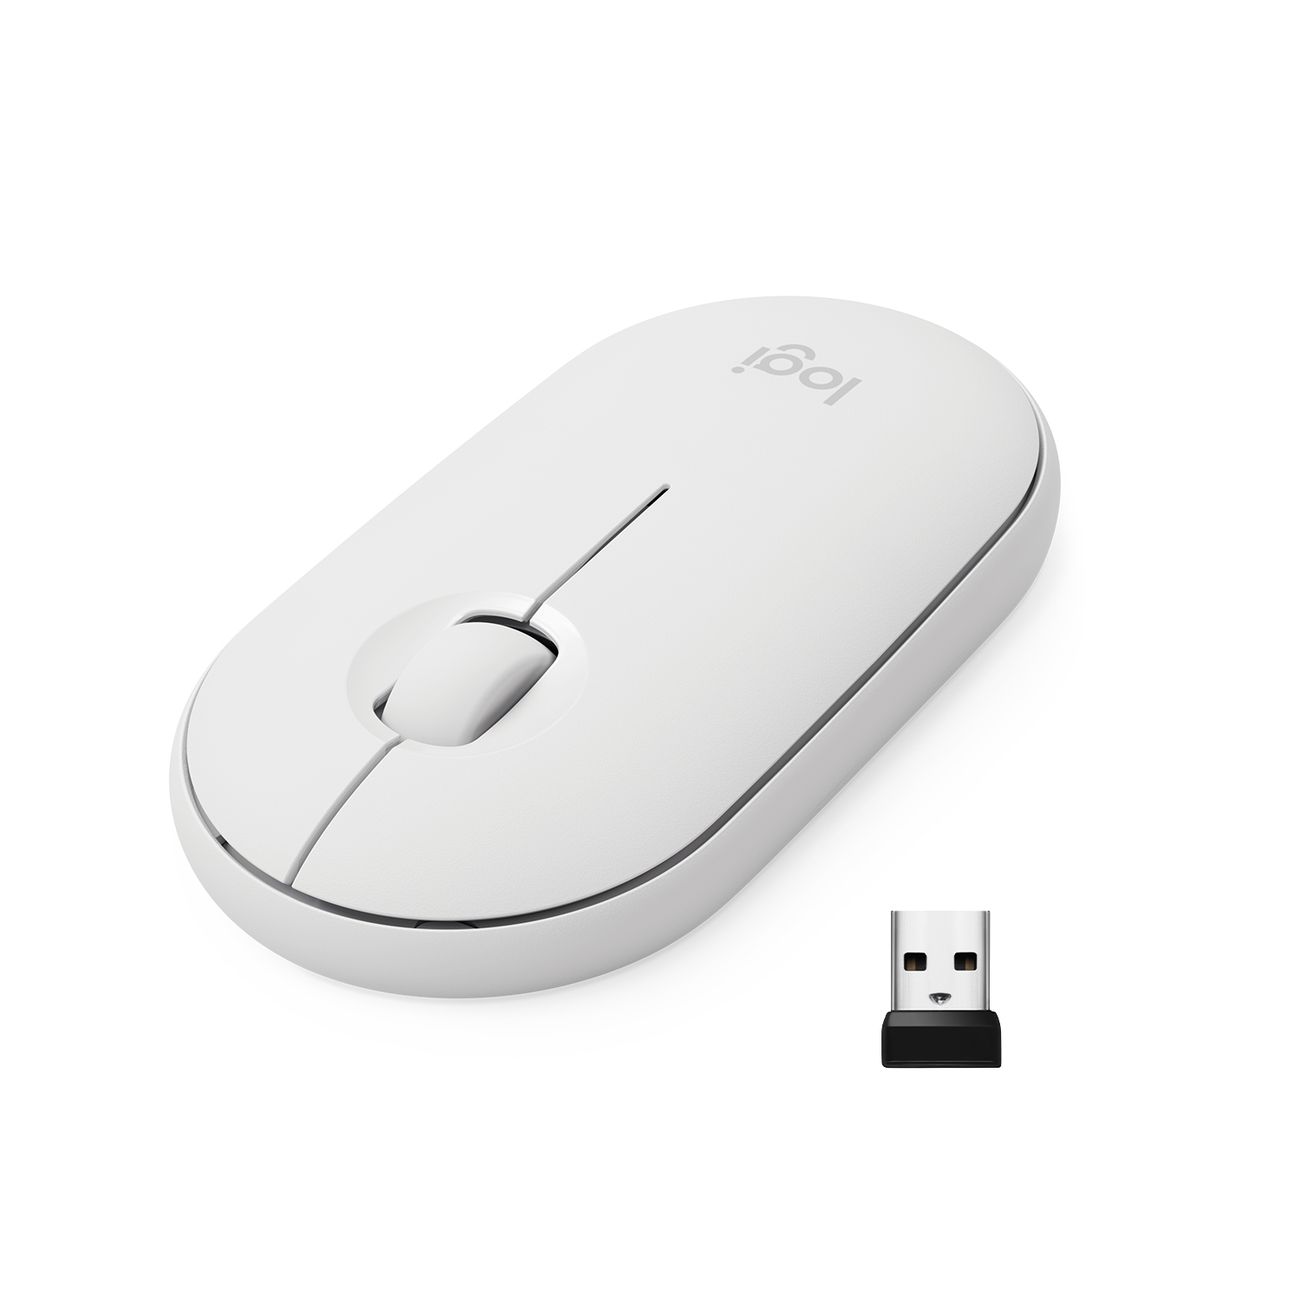 Мышь беспроводная Logitech M350 Pebble Mouse, white (910-005716) мышь беспроводная logitech m350 pebble mouse black 910 005718